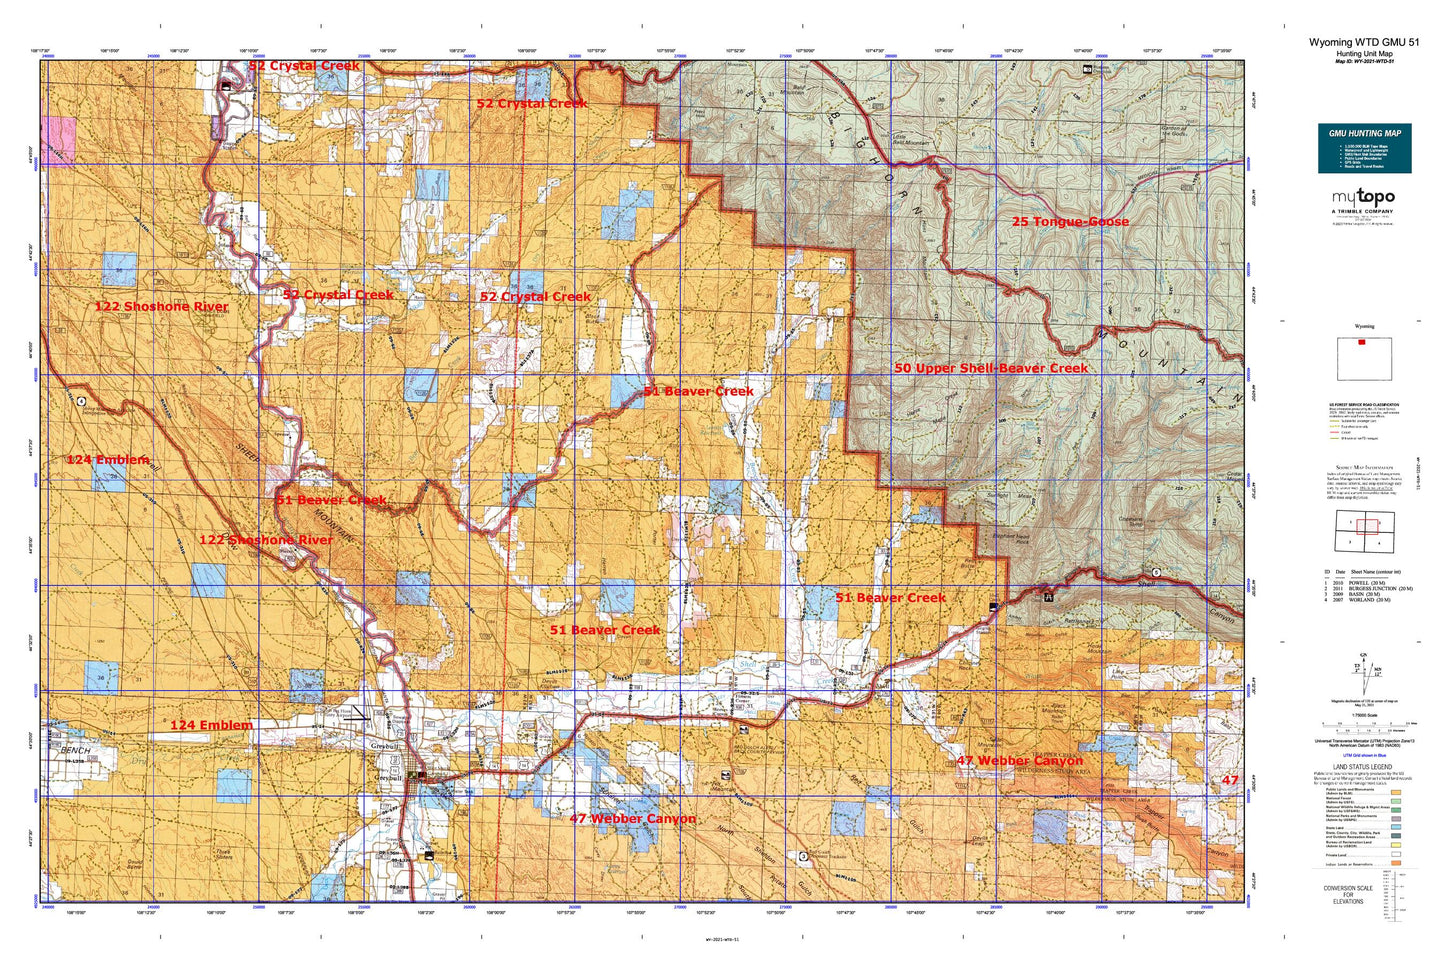 Wyoming Whitetail Deer GMU 51 Map Image